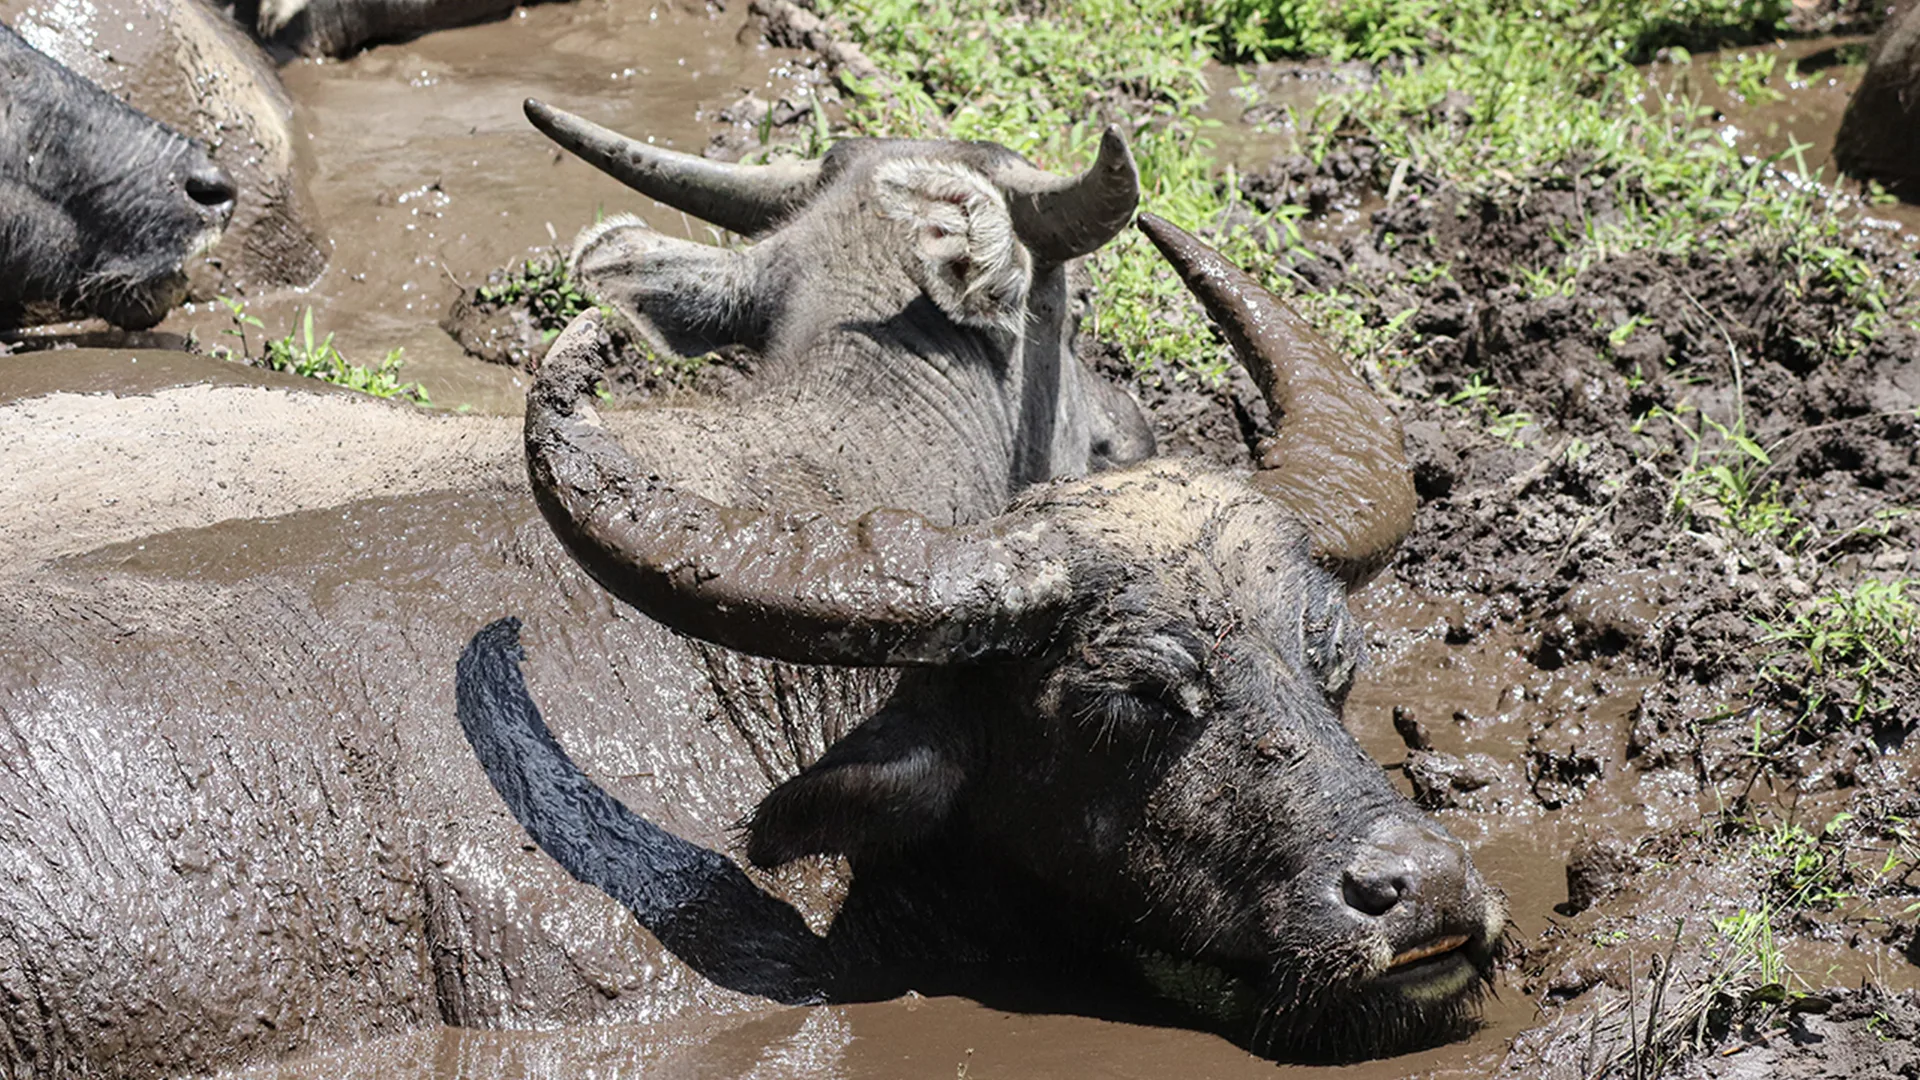 A happy water buffalo bathing in muddy water